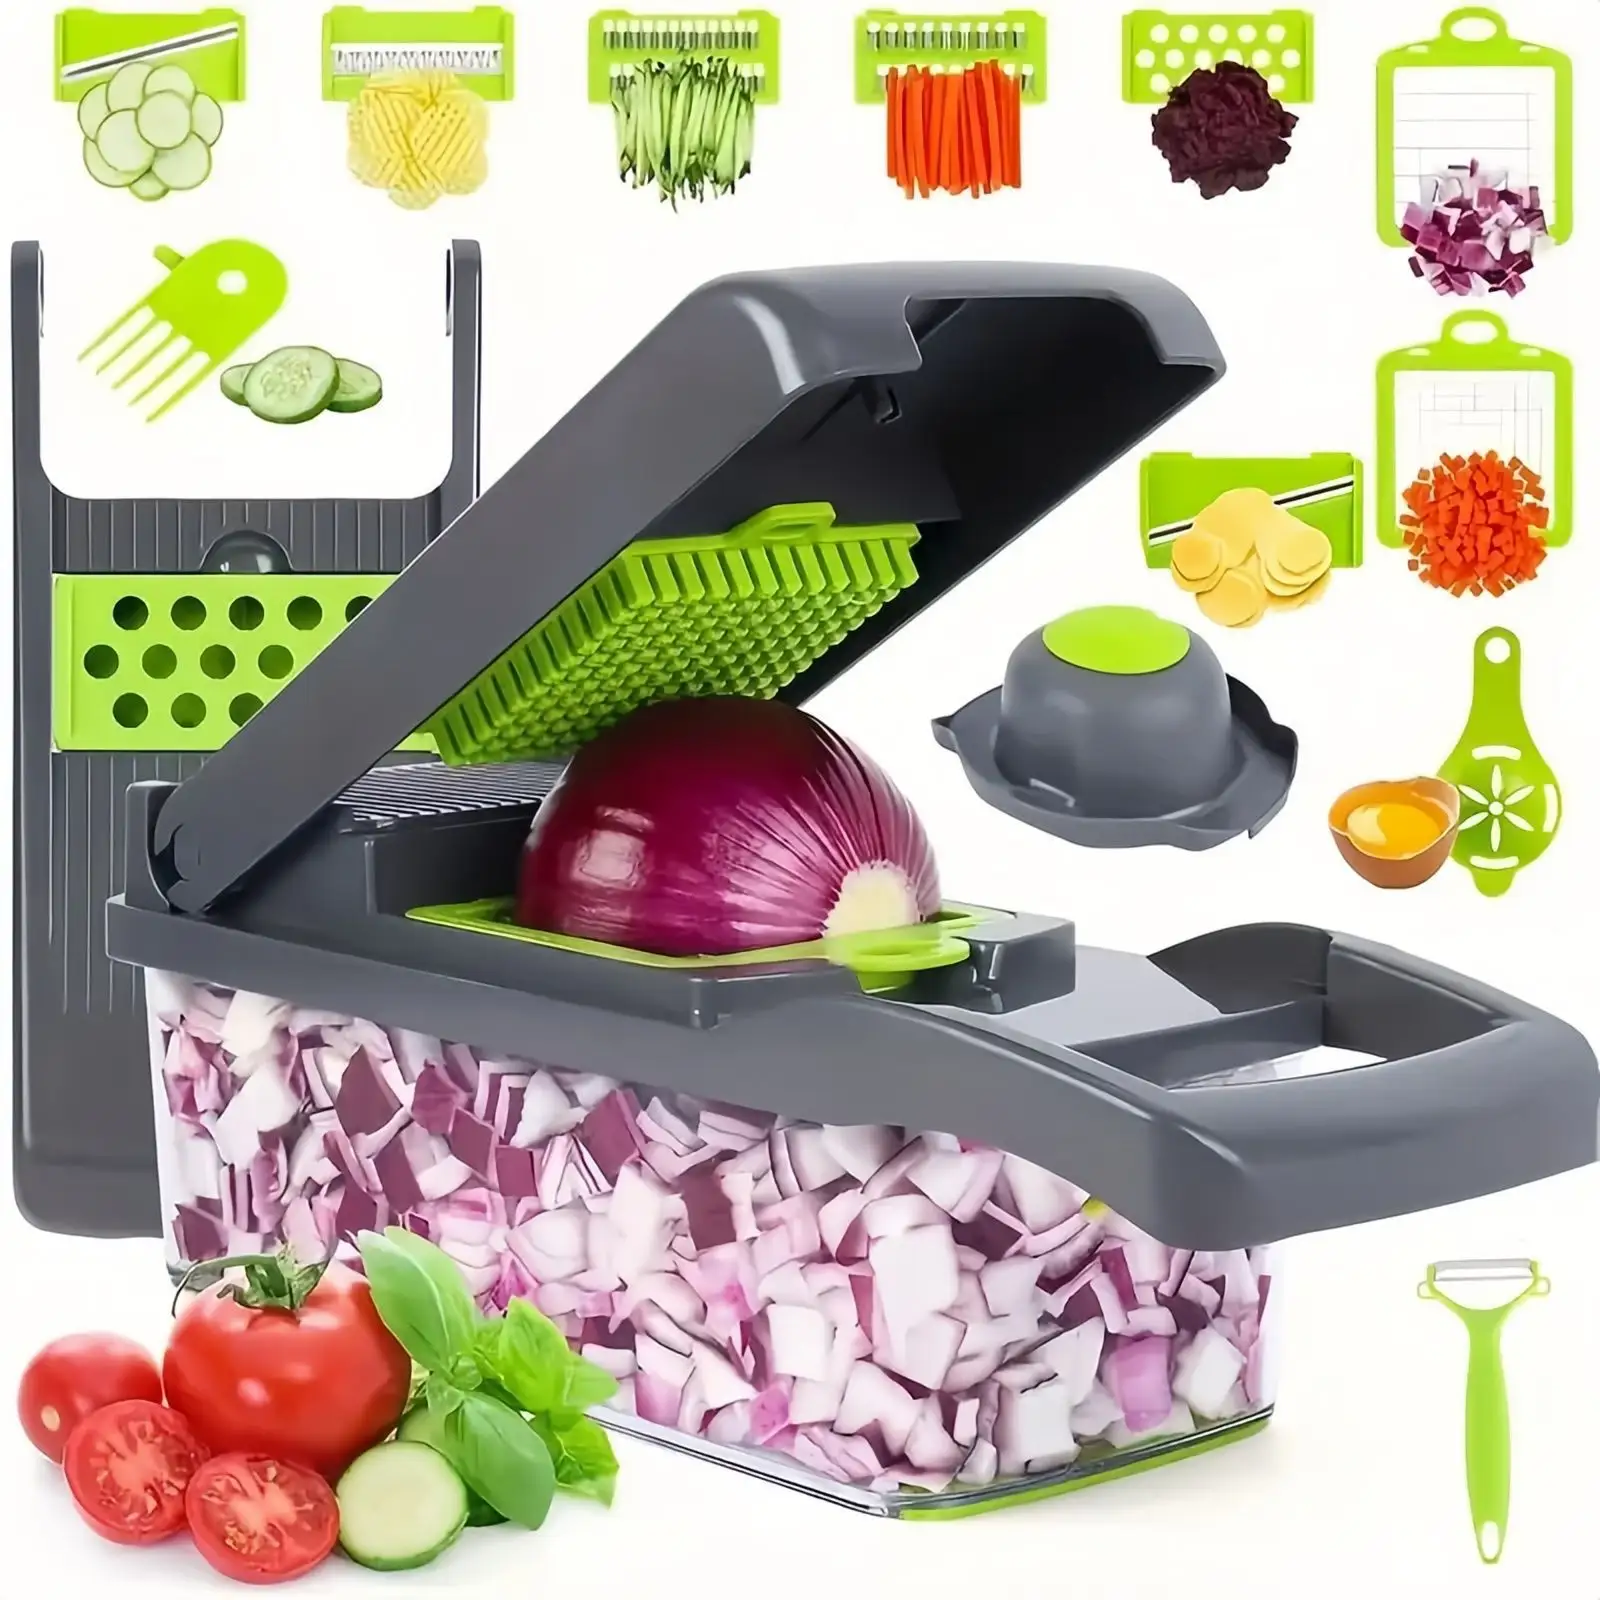 14 En 1 y 16 en 1 Veggie Food Chopper Mandoline Slicer Cortador de cebolla Pelador Rebanador de verduras con guantes